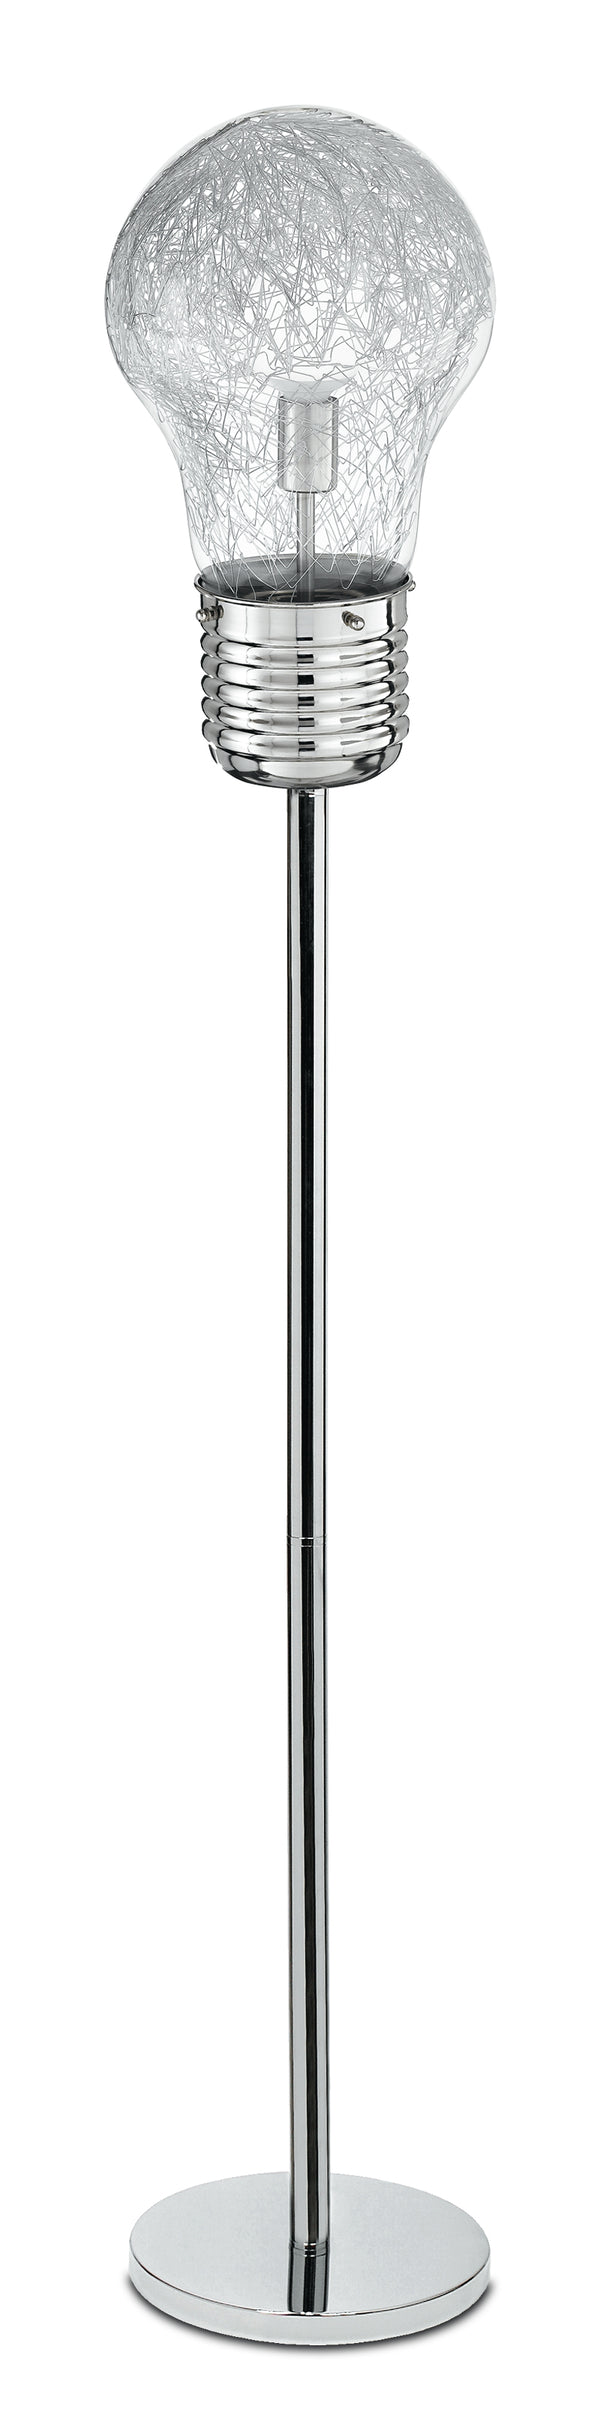 Lampada da Terra Intreccio Fili Alluminio Lampadina Vetro Piantana Moderna E27 prezzo